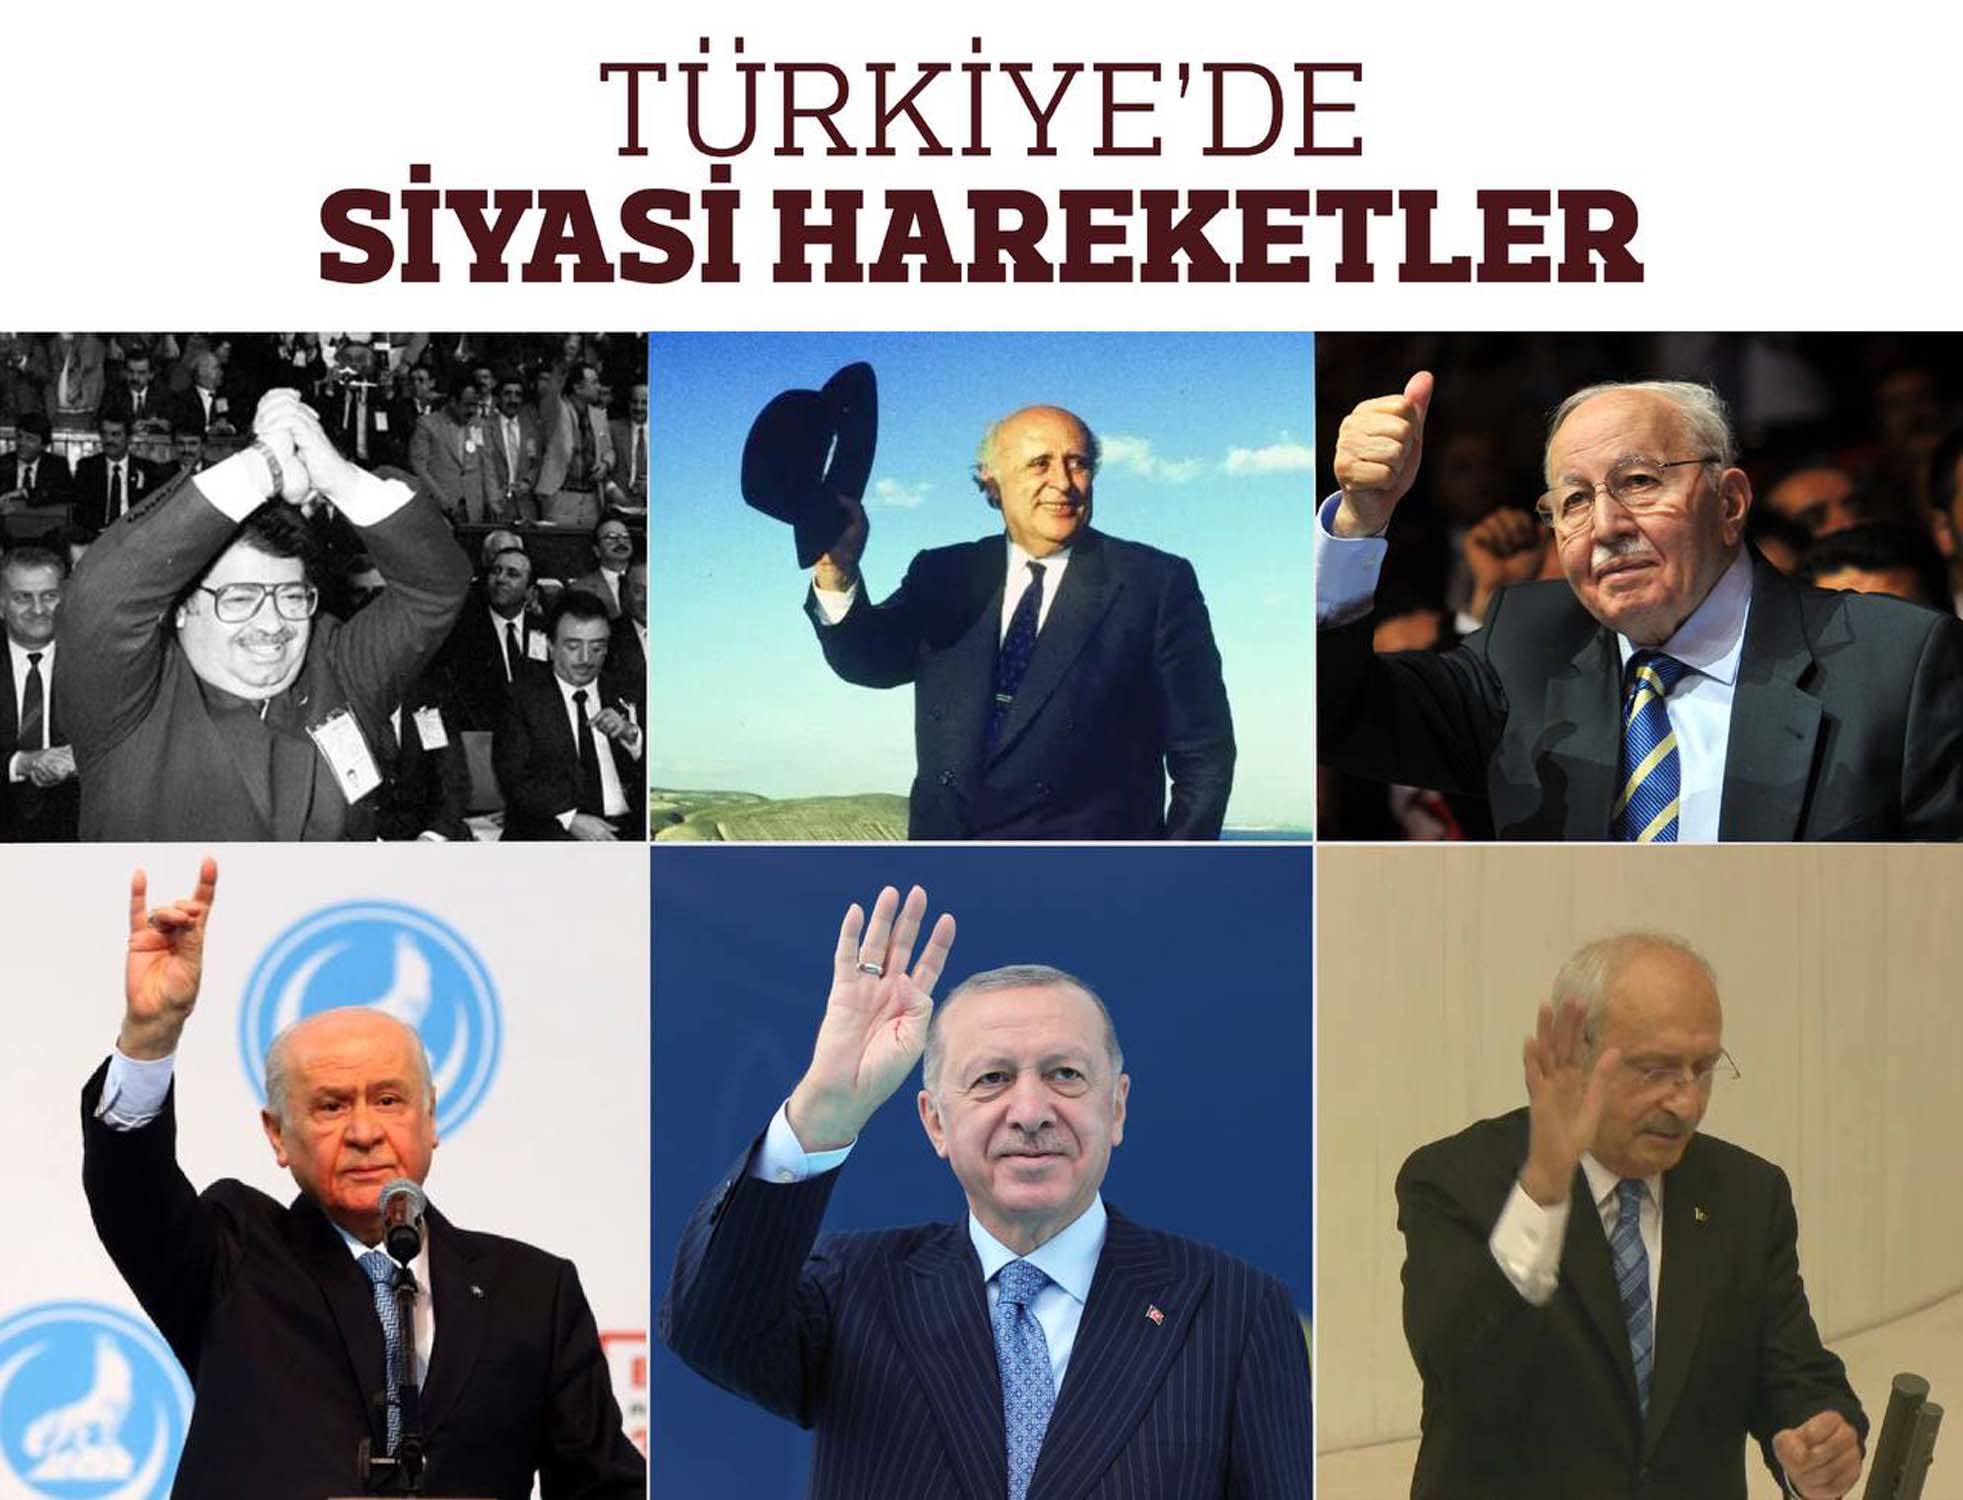 Bakan Varank'tan Kılıçdaroğlu'nun el hareketine nefis göndermeli tweet! "Siyaset kalite işidir" dedi, takipçilerini gülmekten yerlere yatırdı!